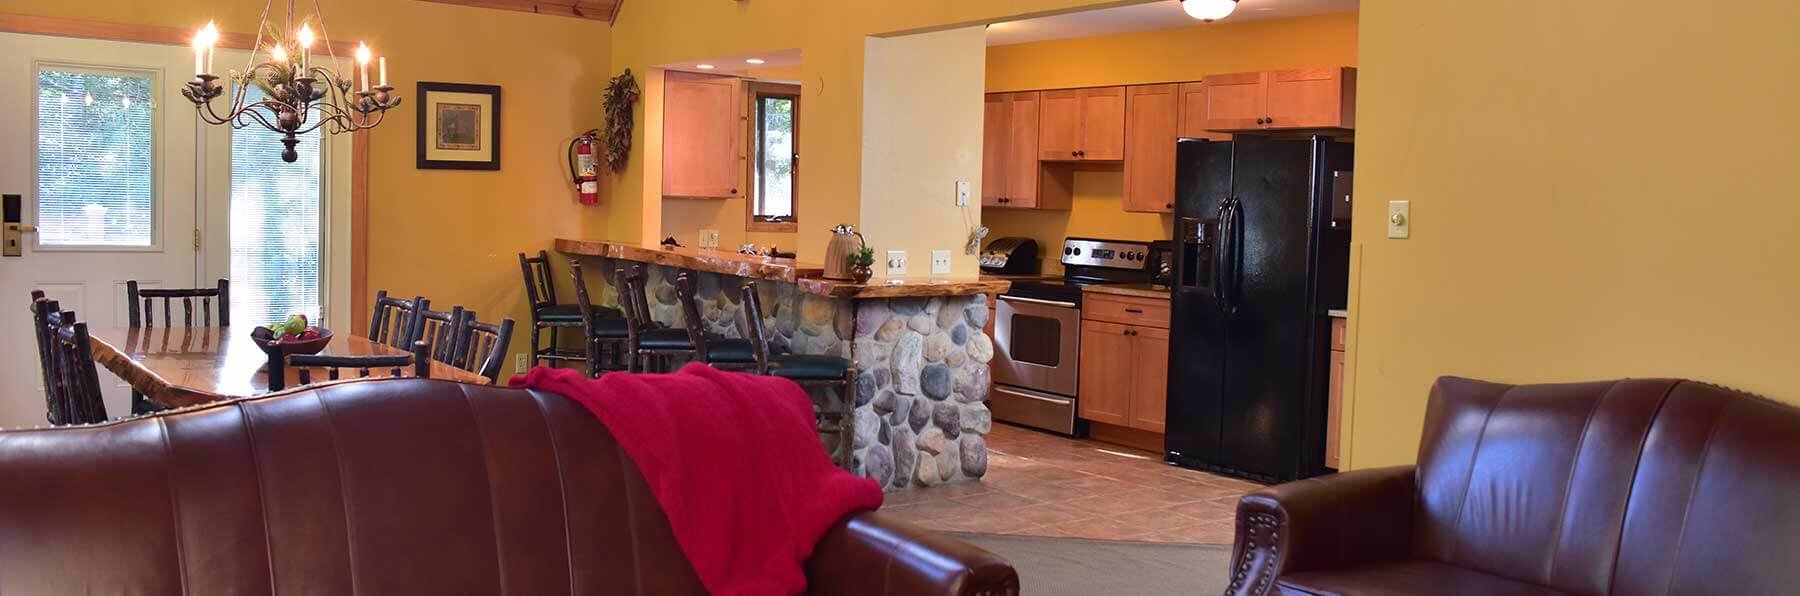 4 Bedroom River Ridge Cabin | Wilderness Resort Wisconsin Dells